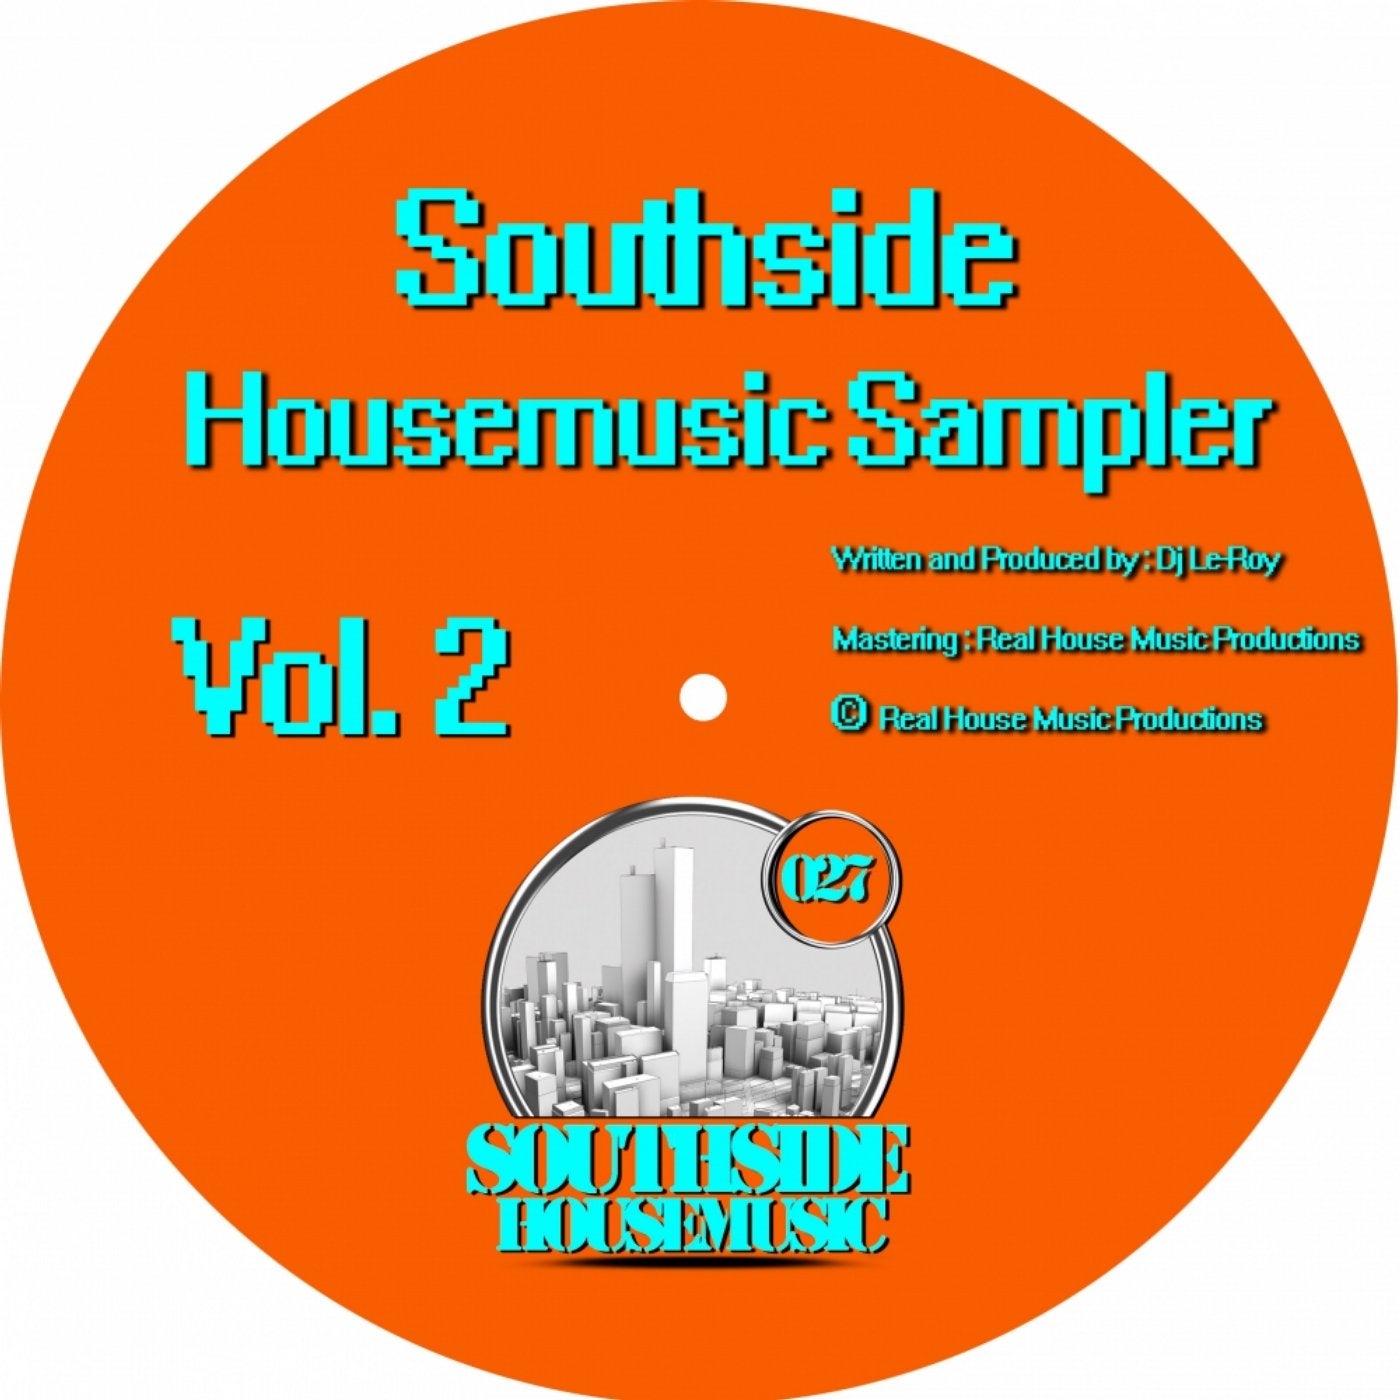 Southside Housemusic Sampler, Vol. 2